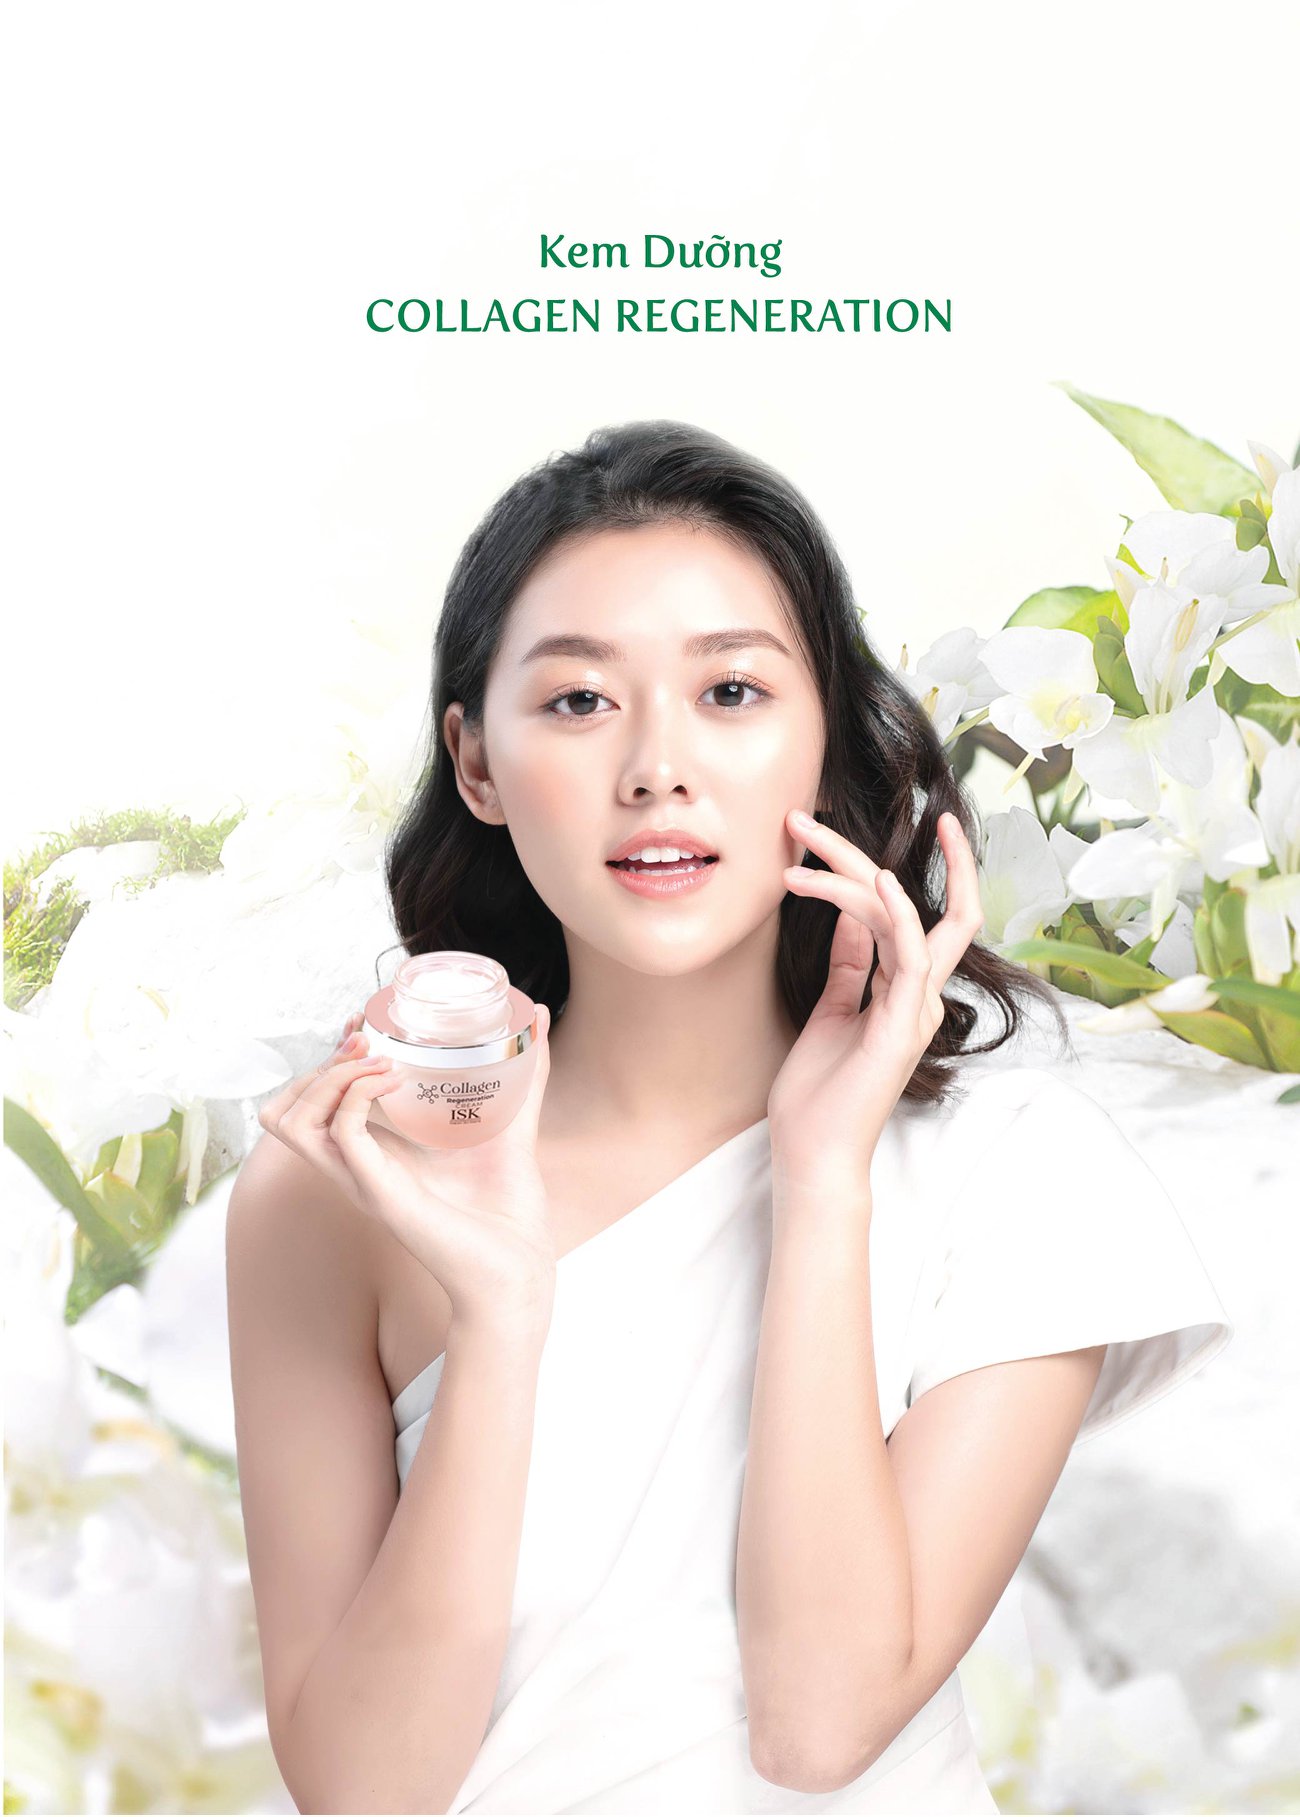 Kem Dưỡng Săn Chắc Và Làm Trắng Da ISK Collagen Regeneration Cream 55g + Tặng Kèm 1 Mặt Nạ Dưỡng Da ISK Mask 23g Bất Kỳ